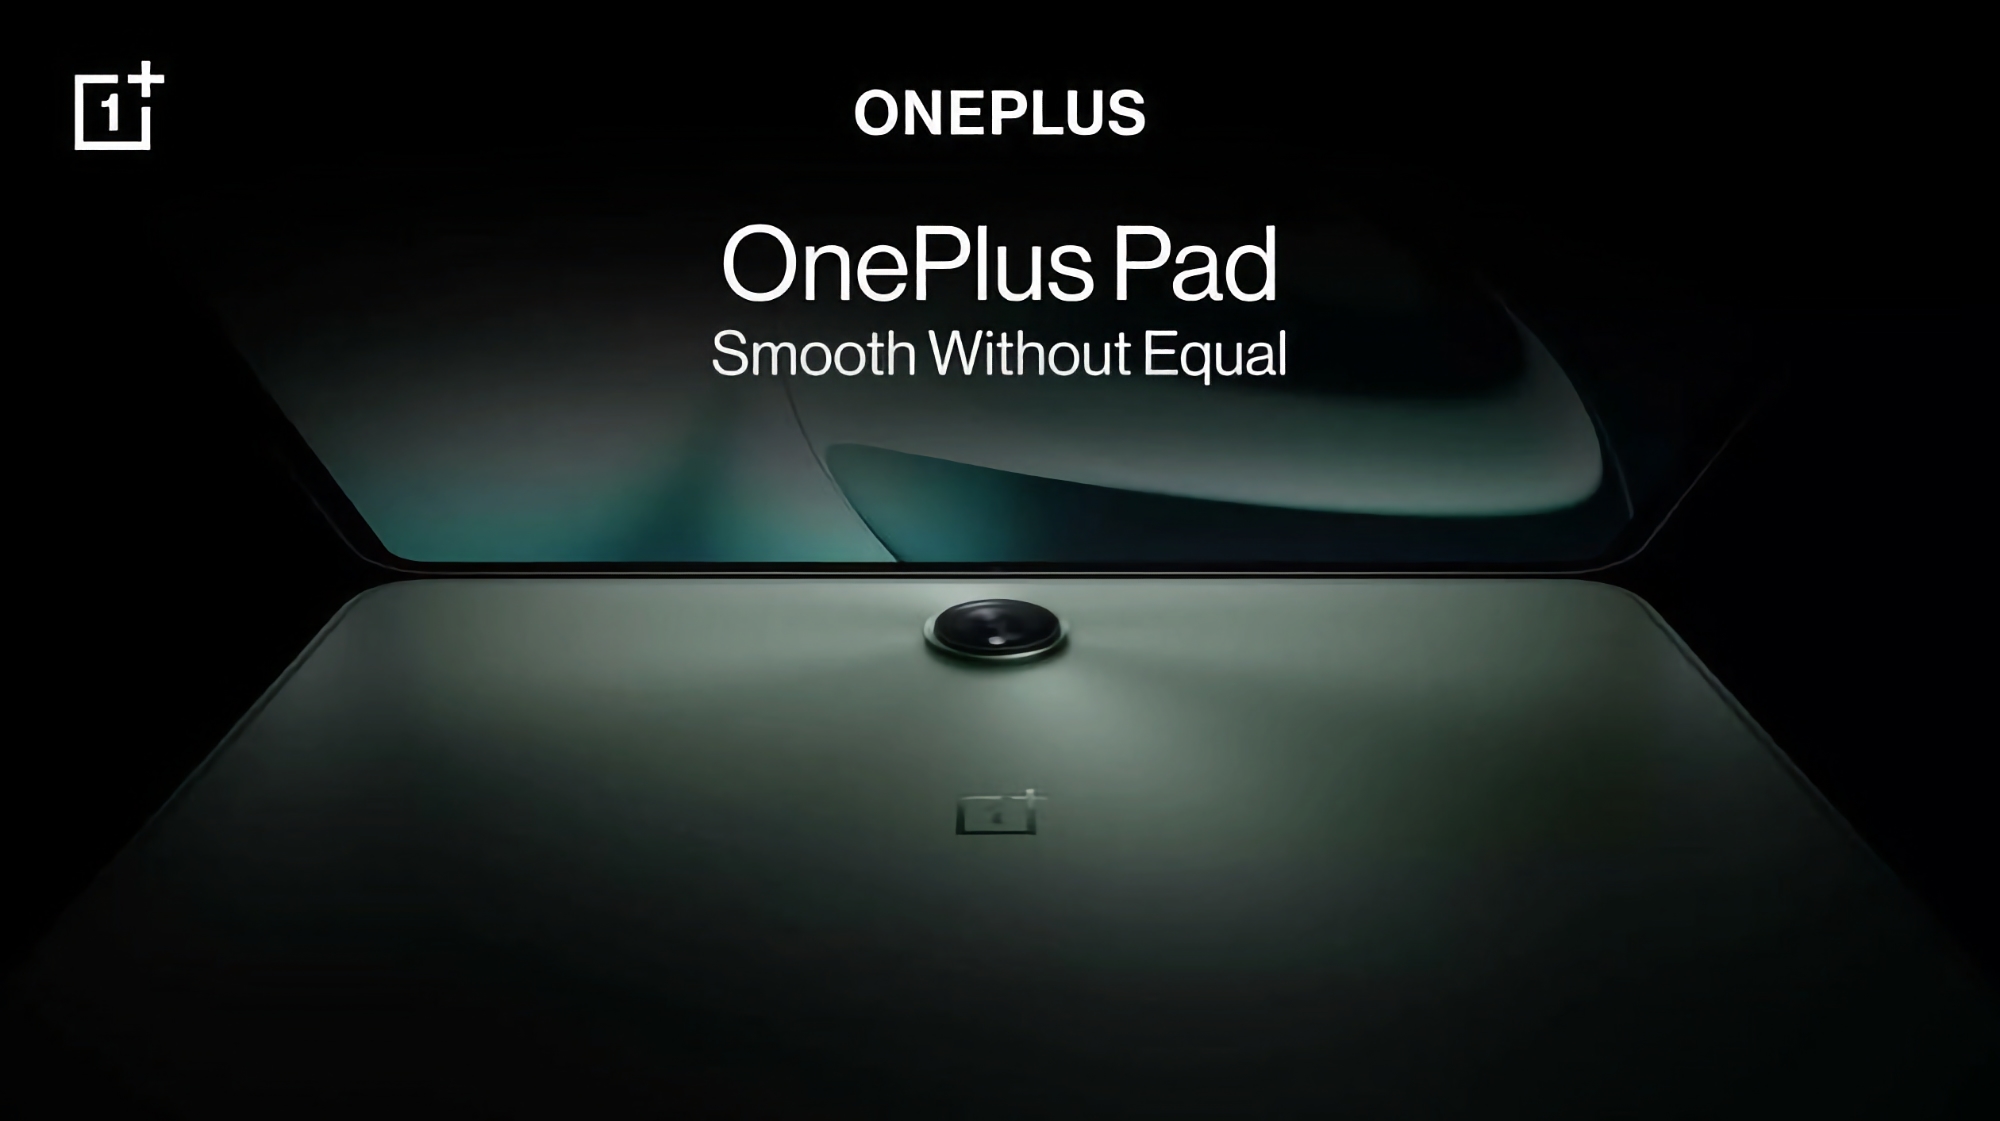 Una piacevole sorpresa: il OnePlus Pad sarà dotato di una tastiera magnetica e di uno stilo